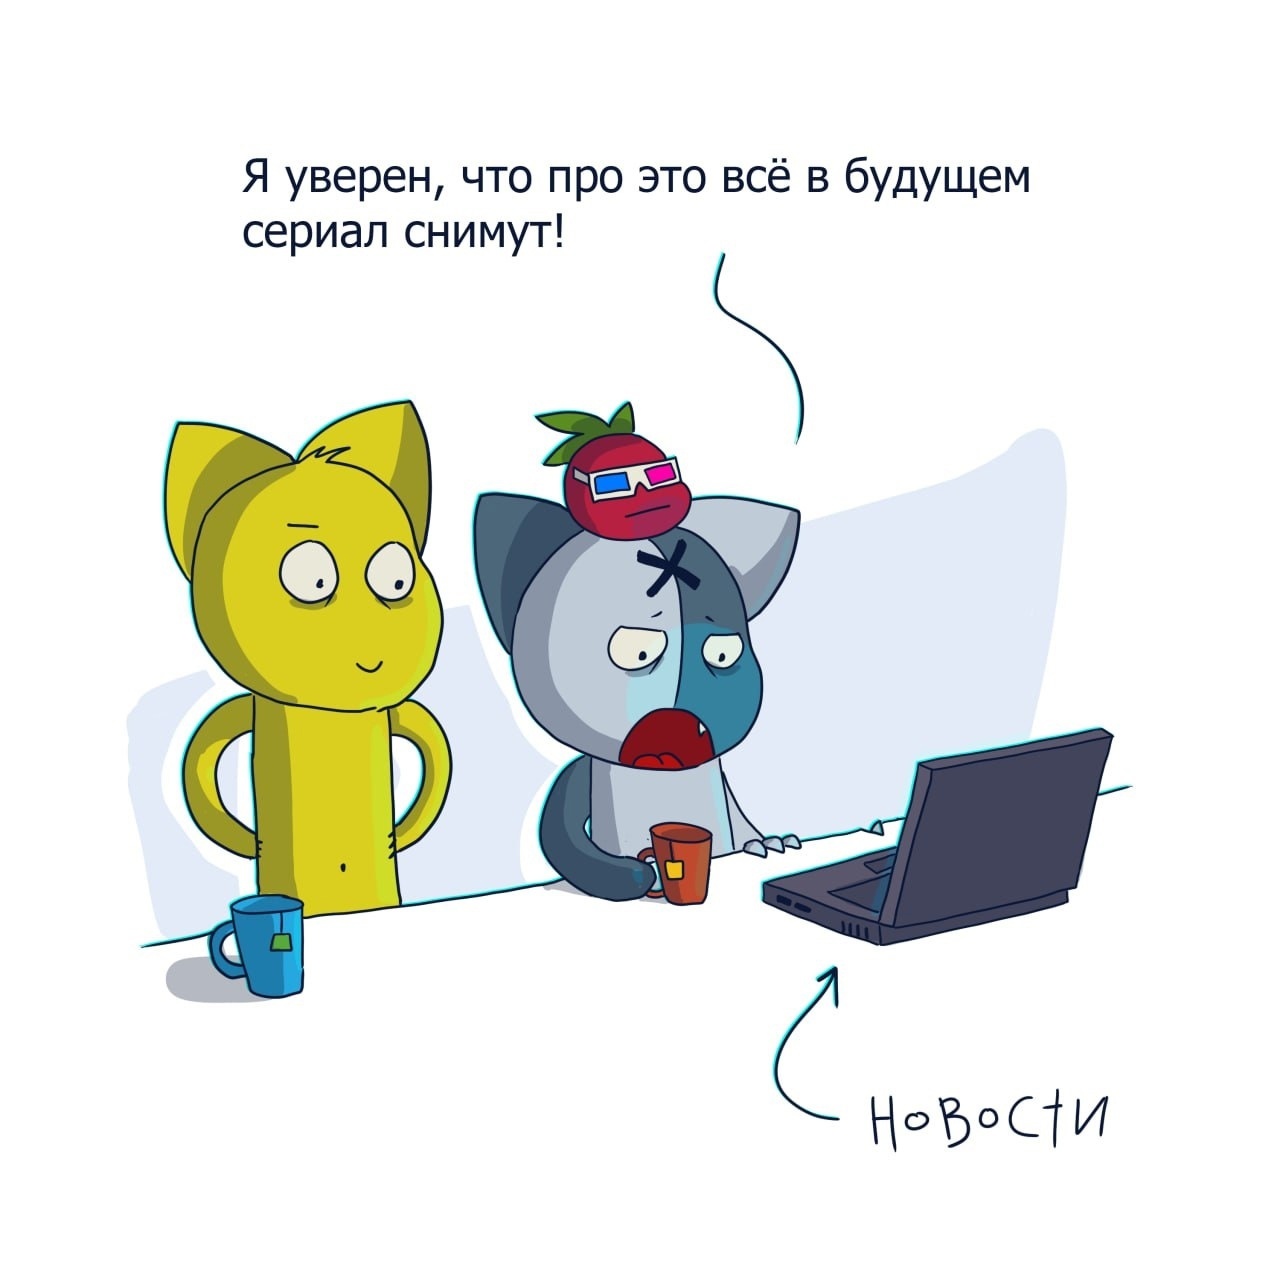 Коты-психопаты, анимешницы и БДСМ имени Сталина: какими были первые веб-комиксы на русском языке? Часть 2 - 21